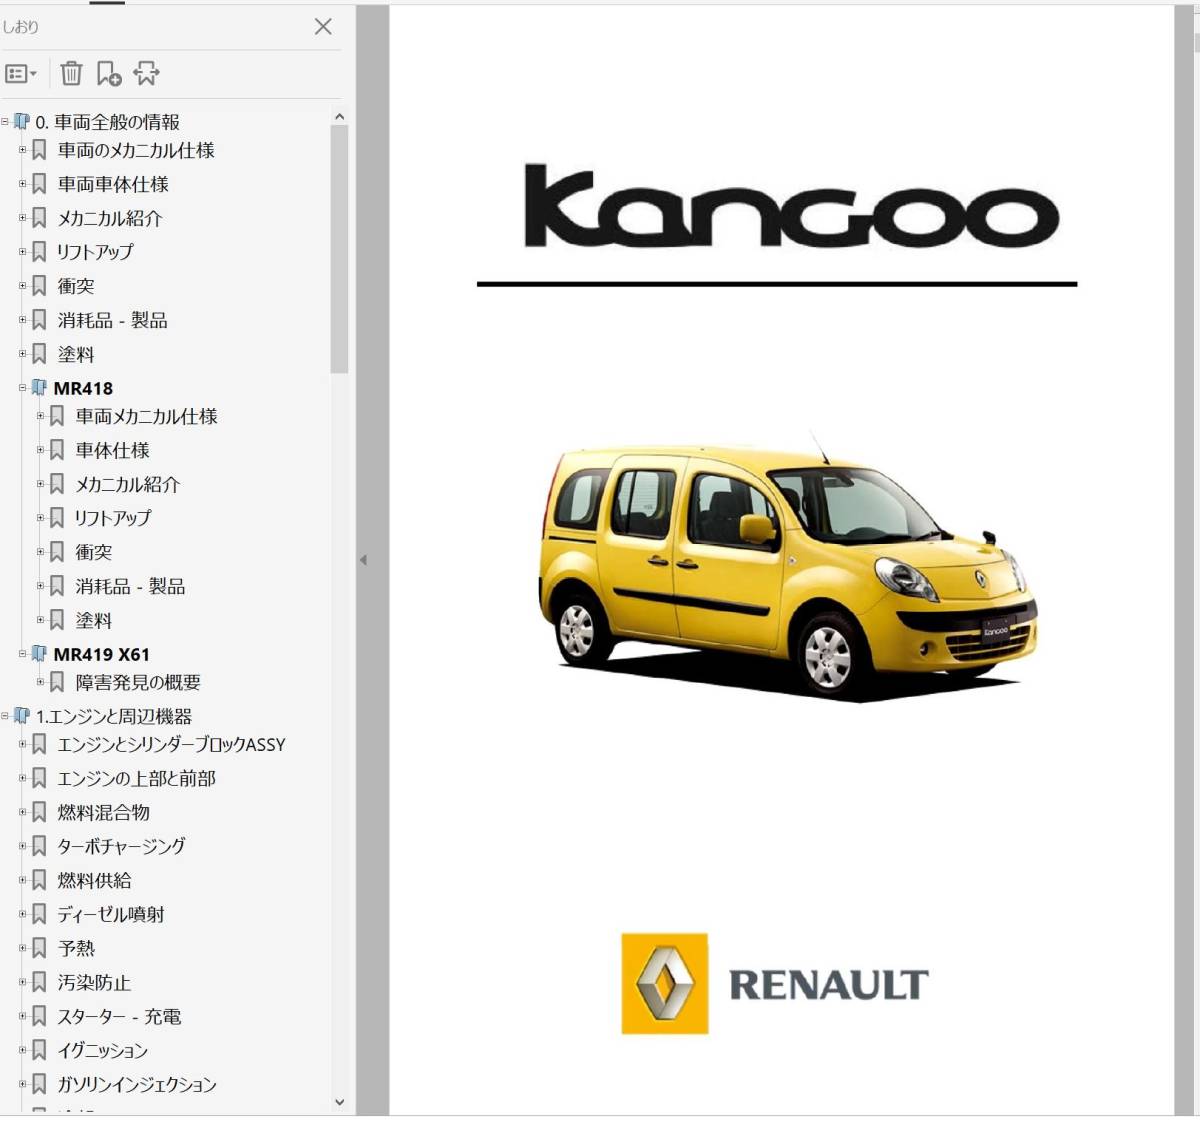 ルノー カングー 2 KanGoo ワークショップマニュアル Ver3　整備書 修理書 マニュアル カングー2 kangoo2 デカングー _画像1